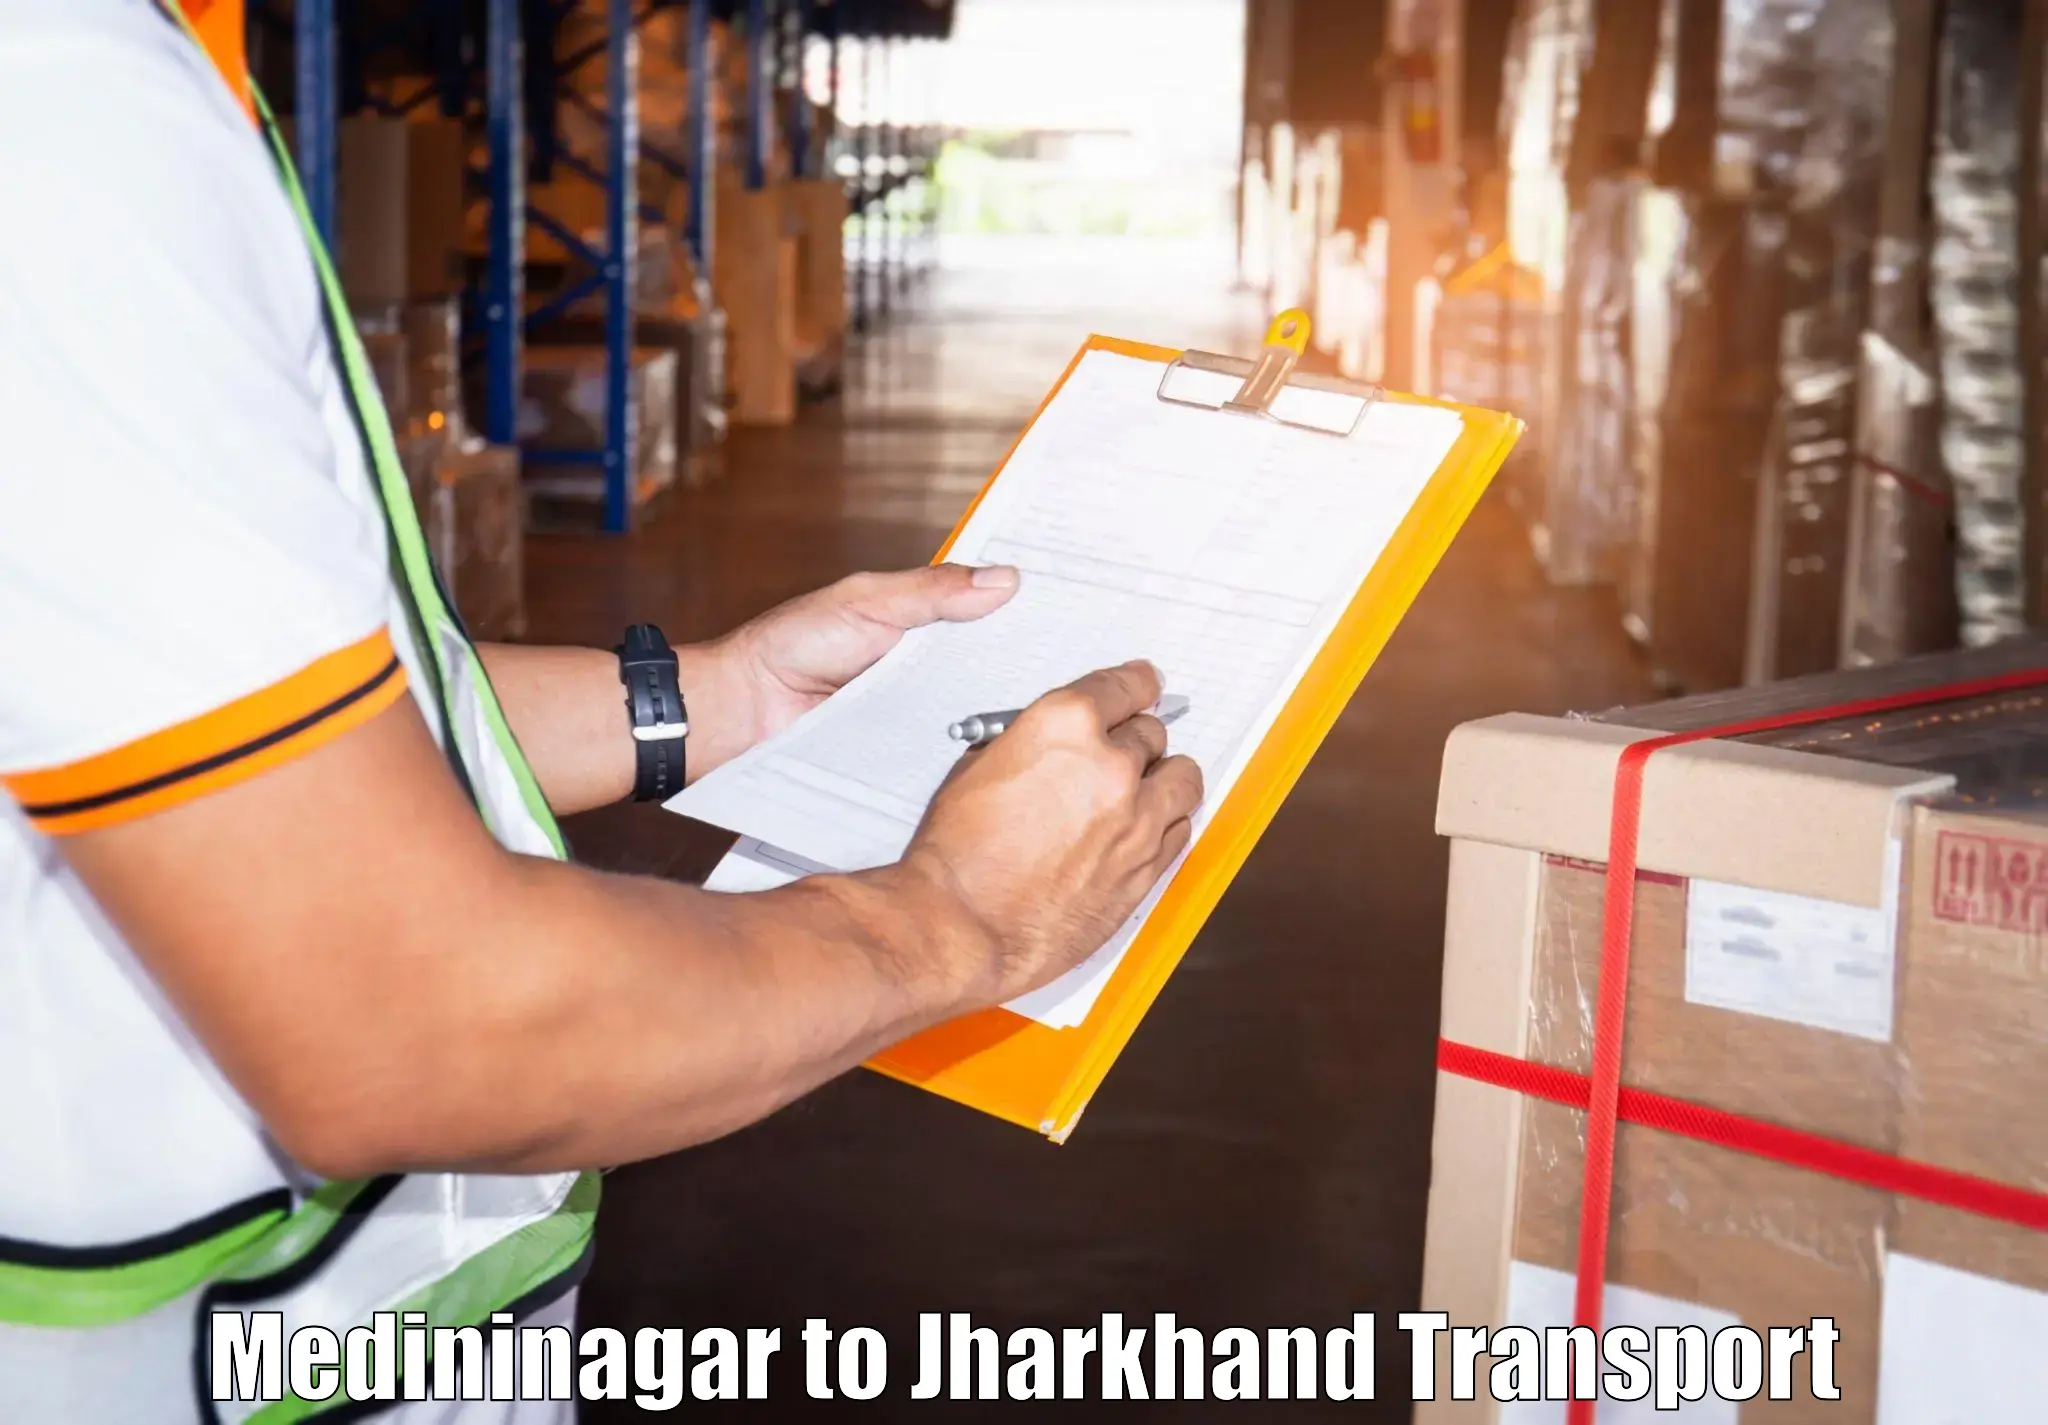 Transport in sharing Medininagar to Ranchi